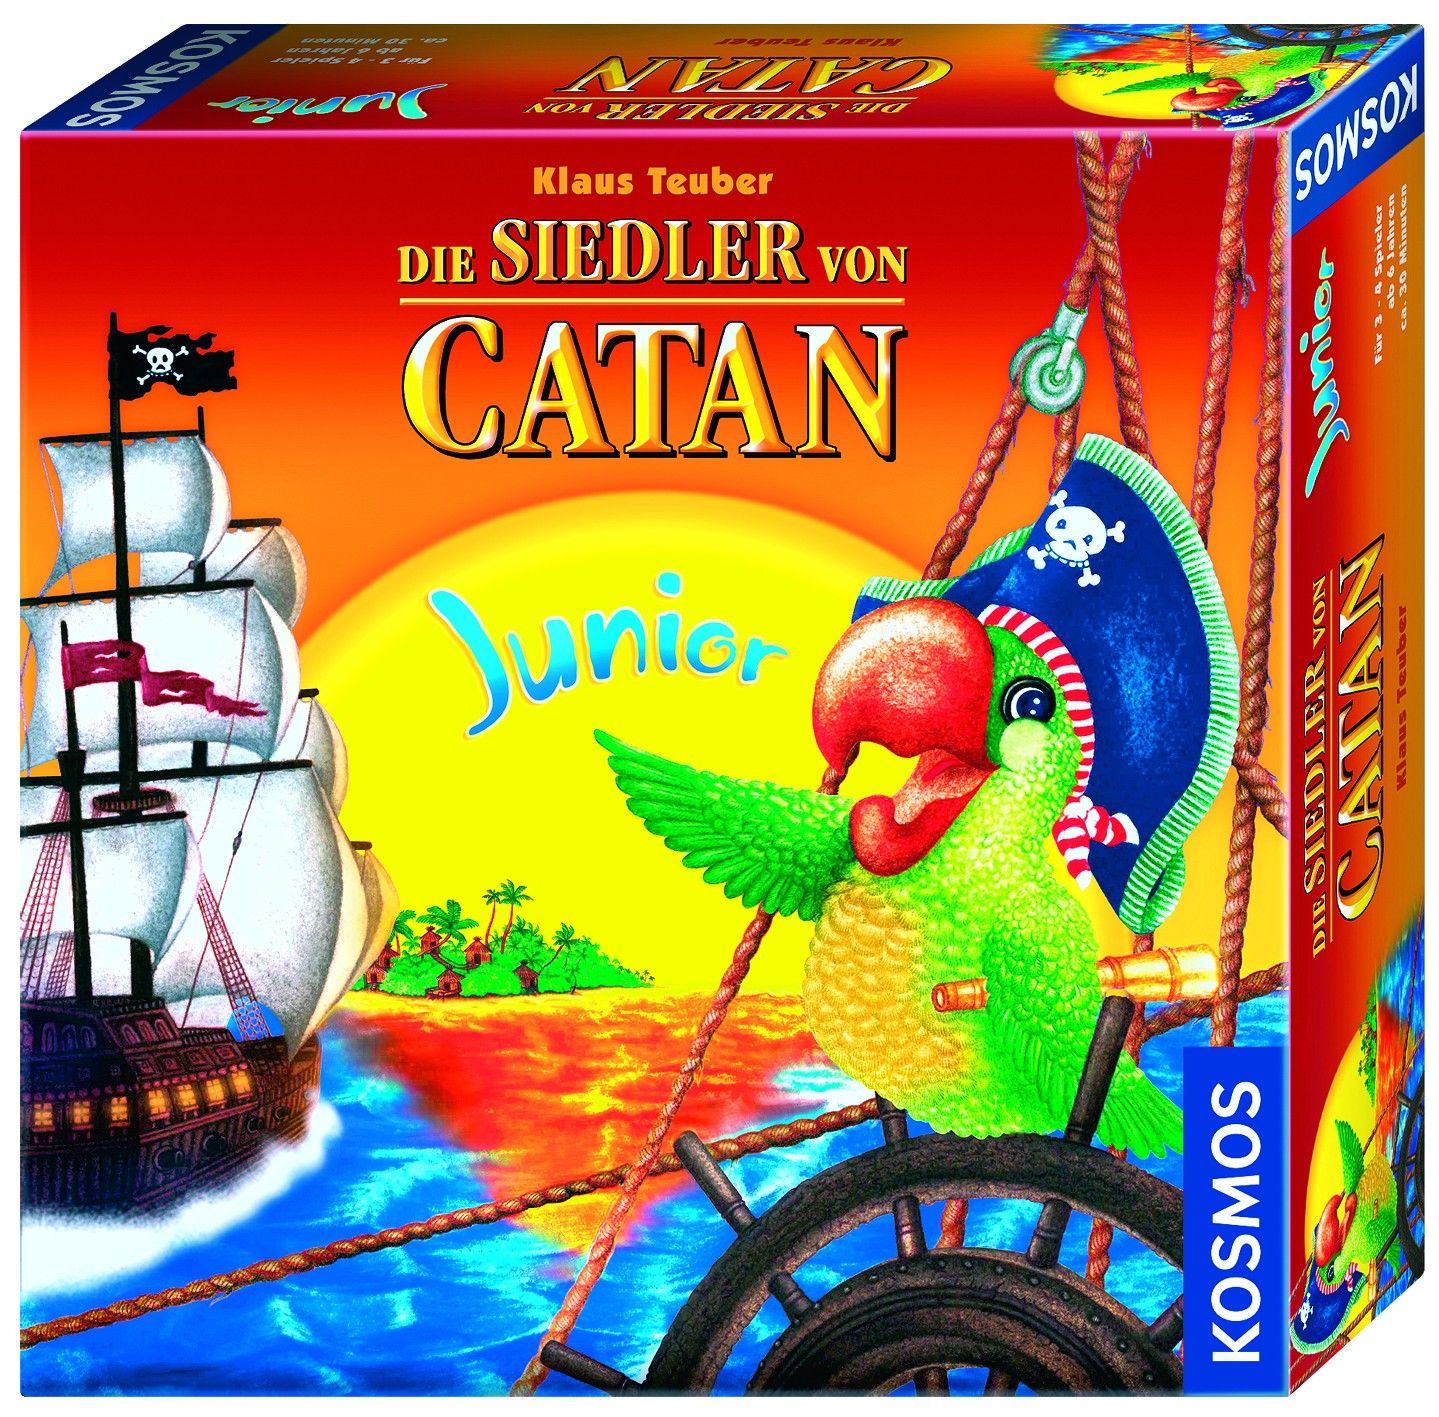 De Kolonisten van Catan Junior, bordspel prijs vergelijken doet u op Bordspellenvergelijken.nl zowel voor in Nederland als in